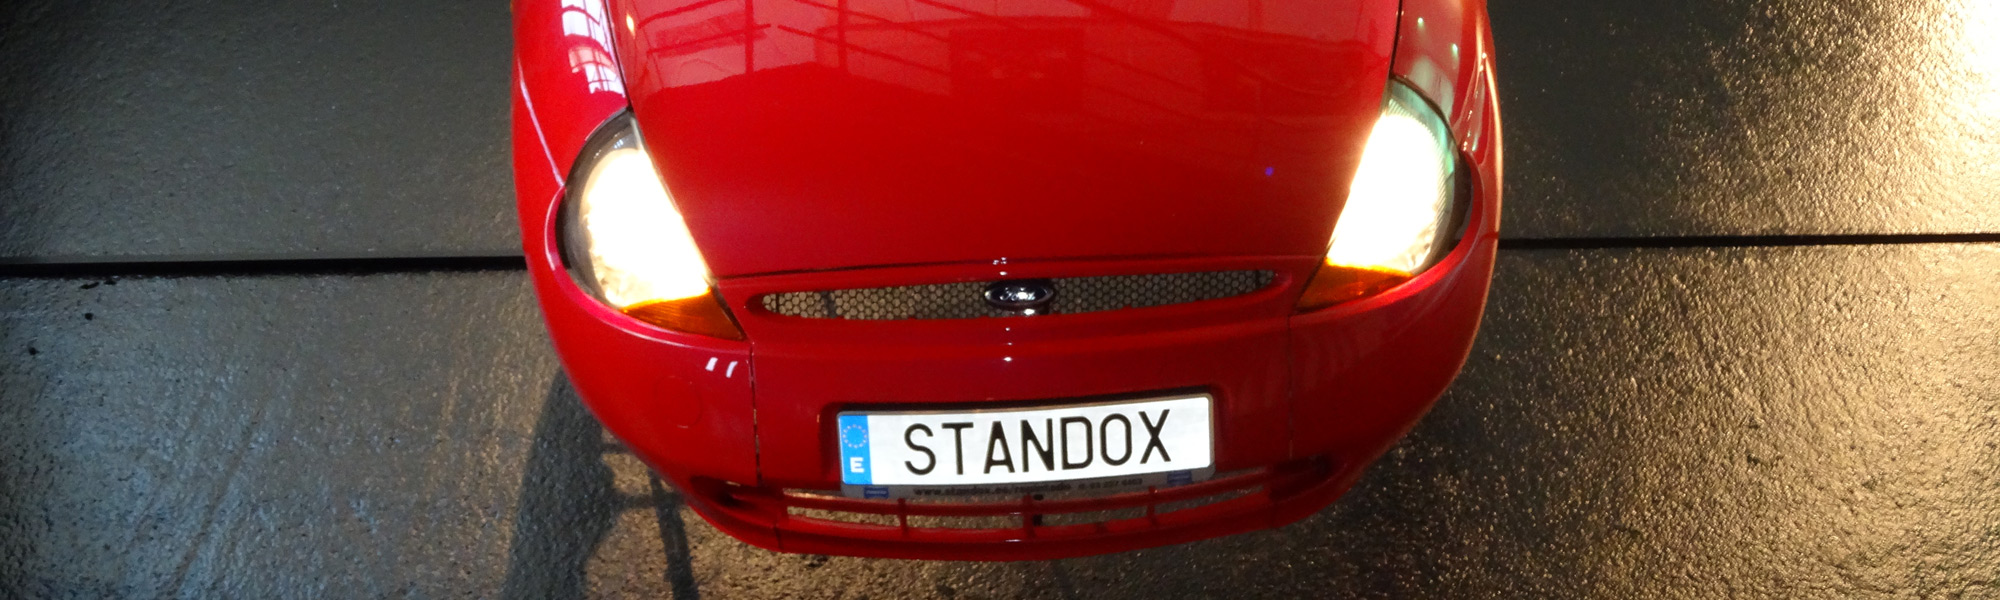 standox pintura para coches